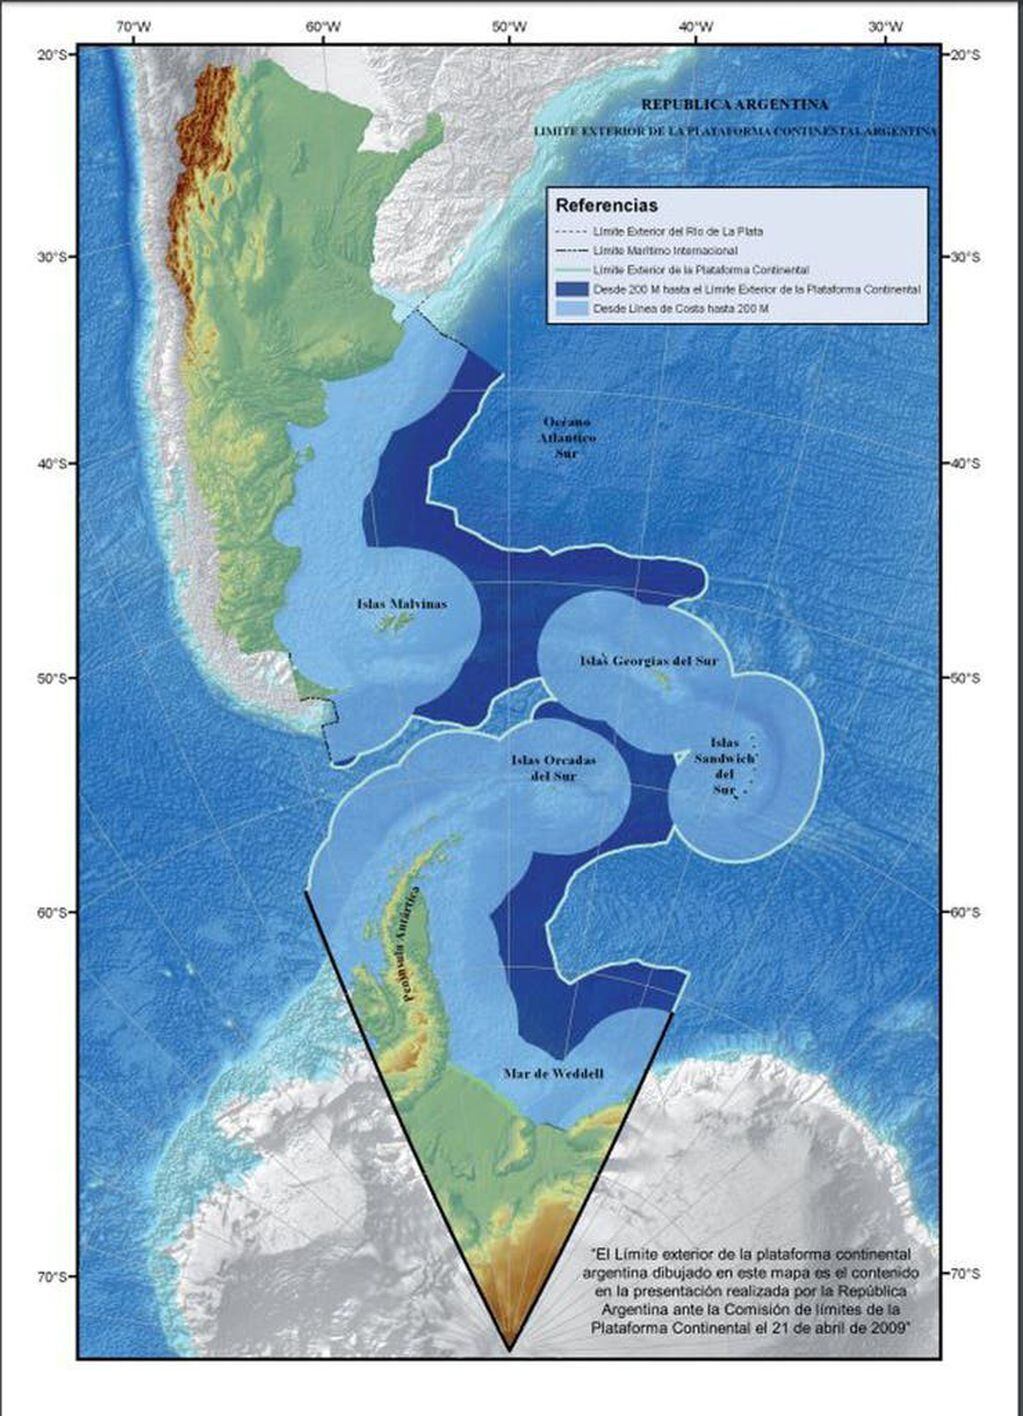 Mapa Bicontinental Argentino con los límites y espacios marítios e insulares correspondientes.